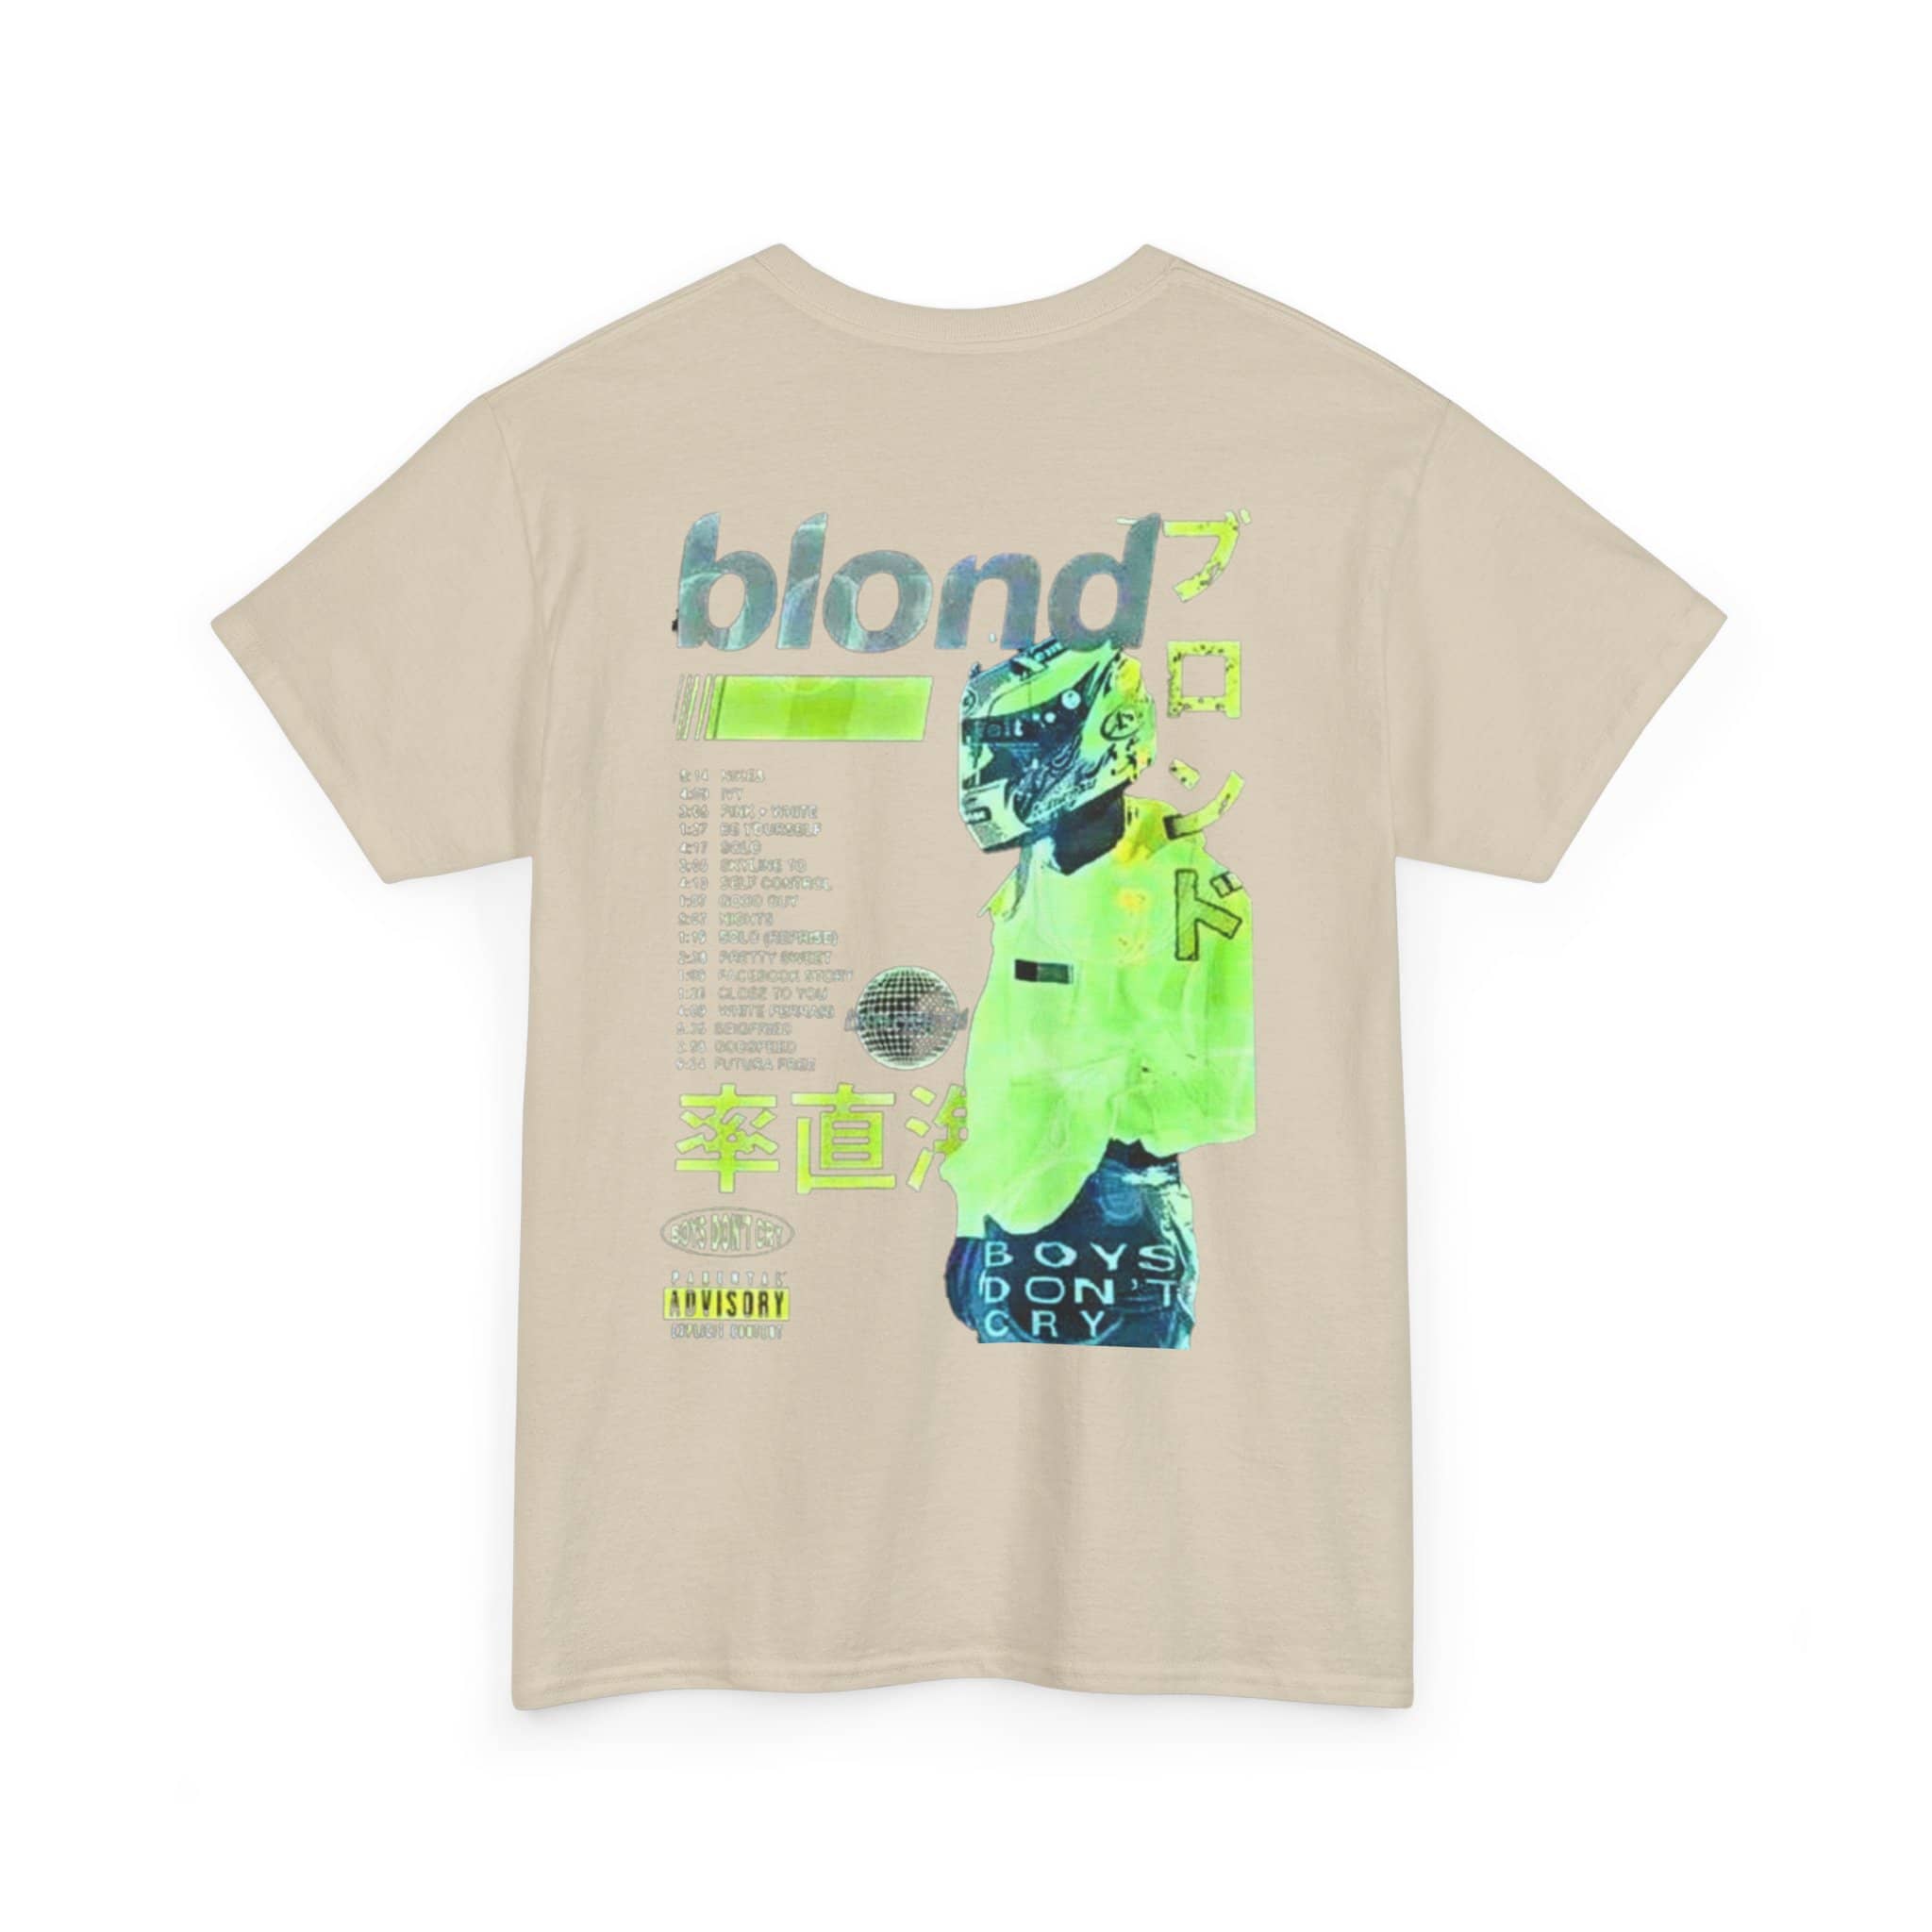 Frank Ocean "Blonde" T-Shirt